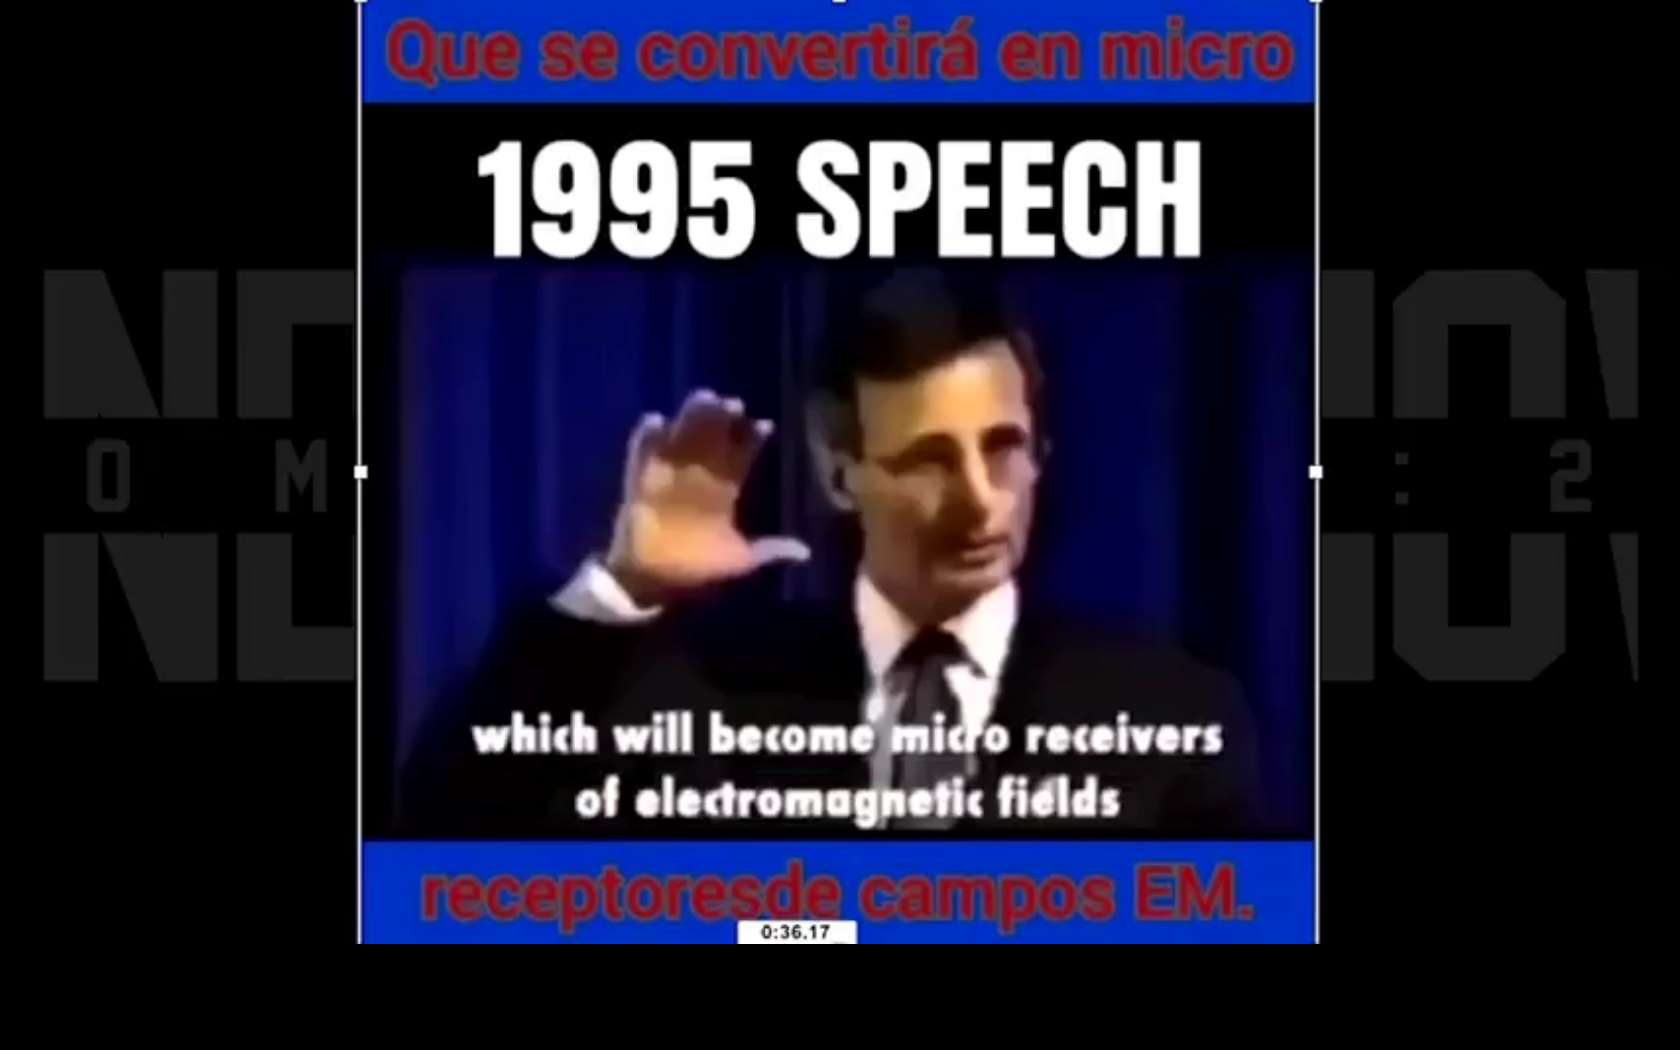 1995 Speech - coof - Screenshot at 2021-10-01 21:16:08